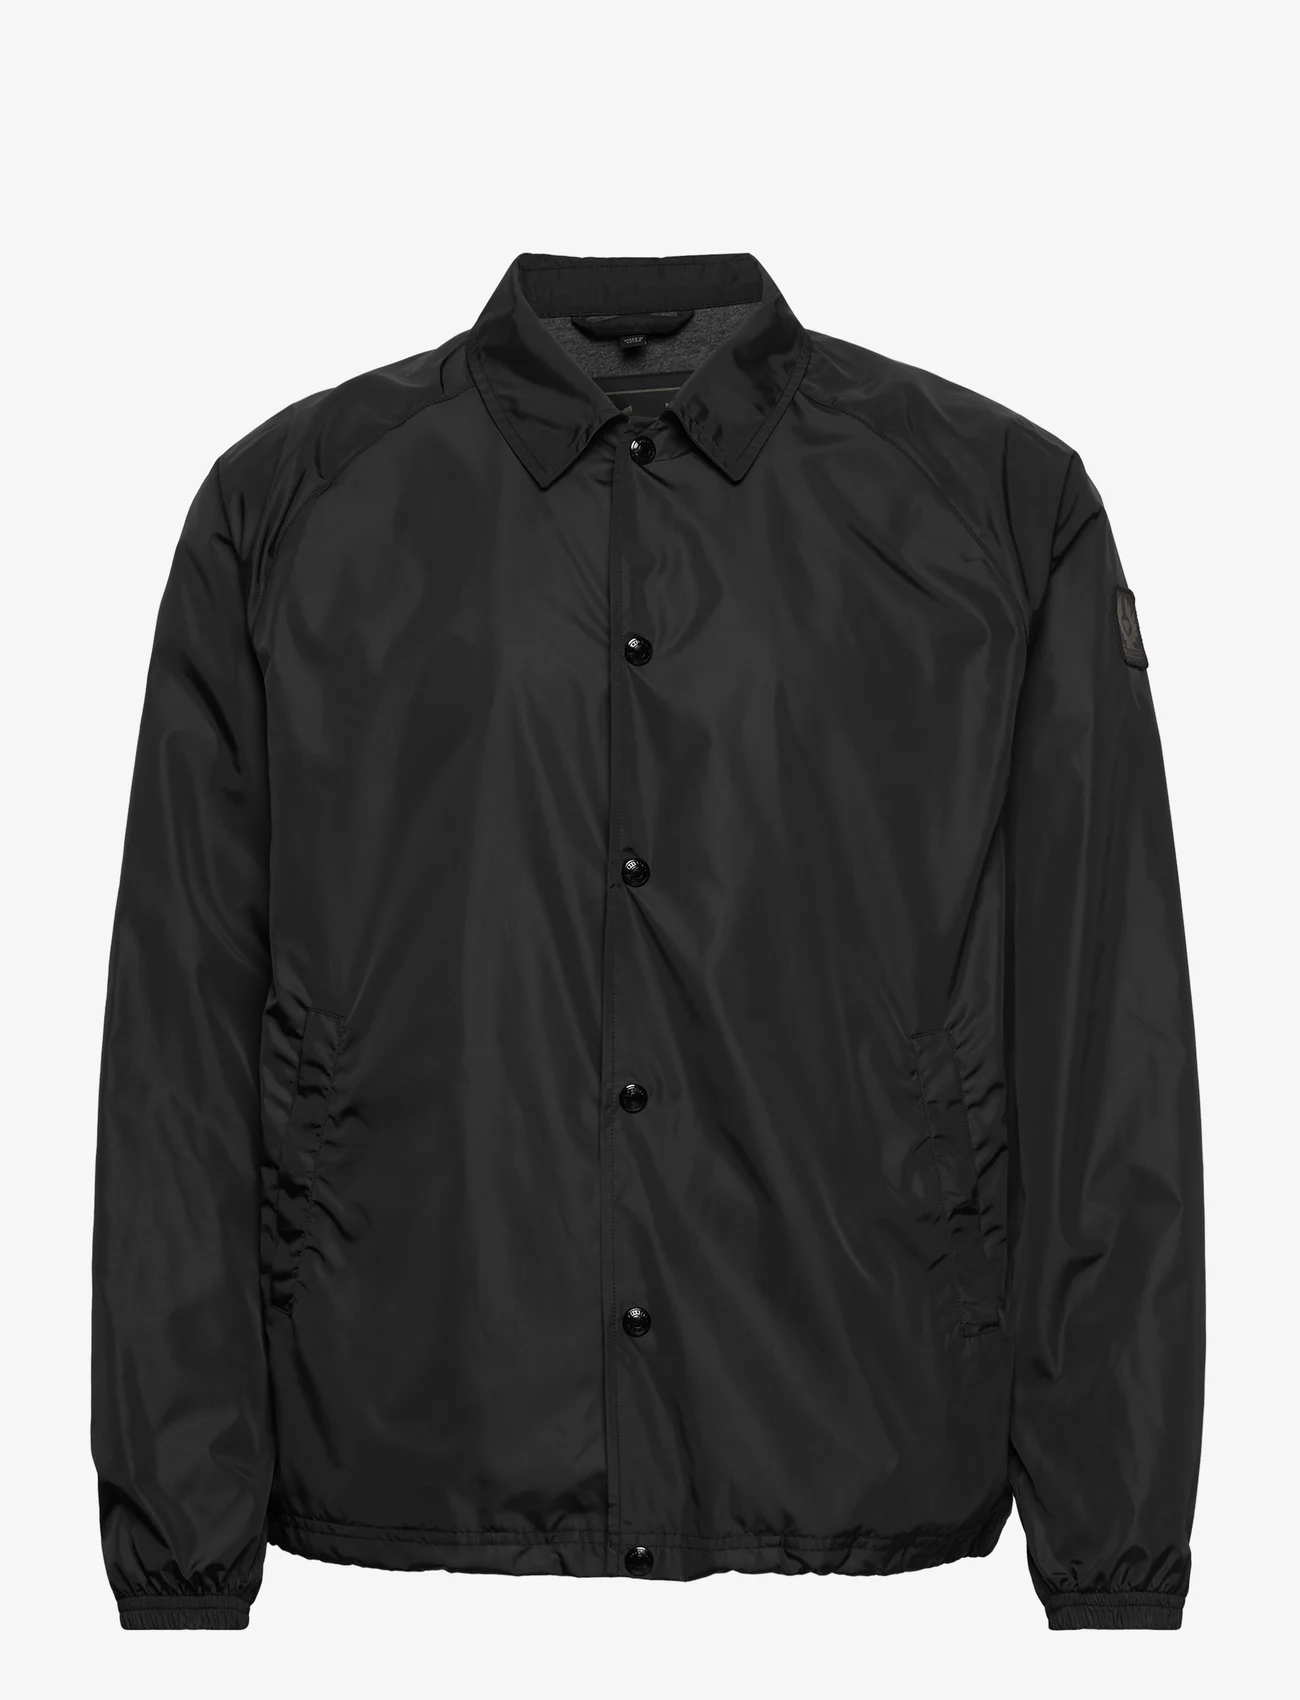 Belstaff - TEAMSTER JACKET - spring jackets - black - 0